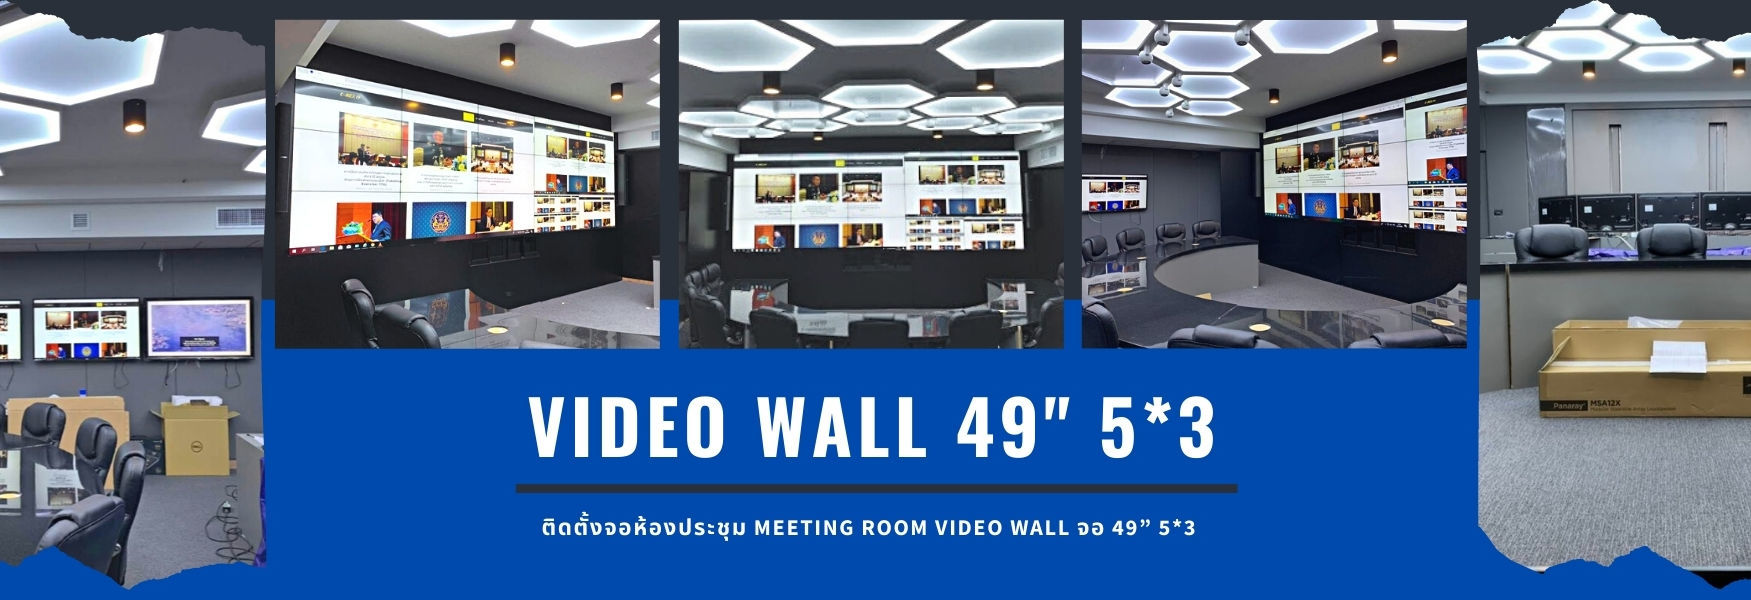 ติดตั้งจอห้องประชุม Meeting room Video Wall จอ 49” 5*3